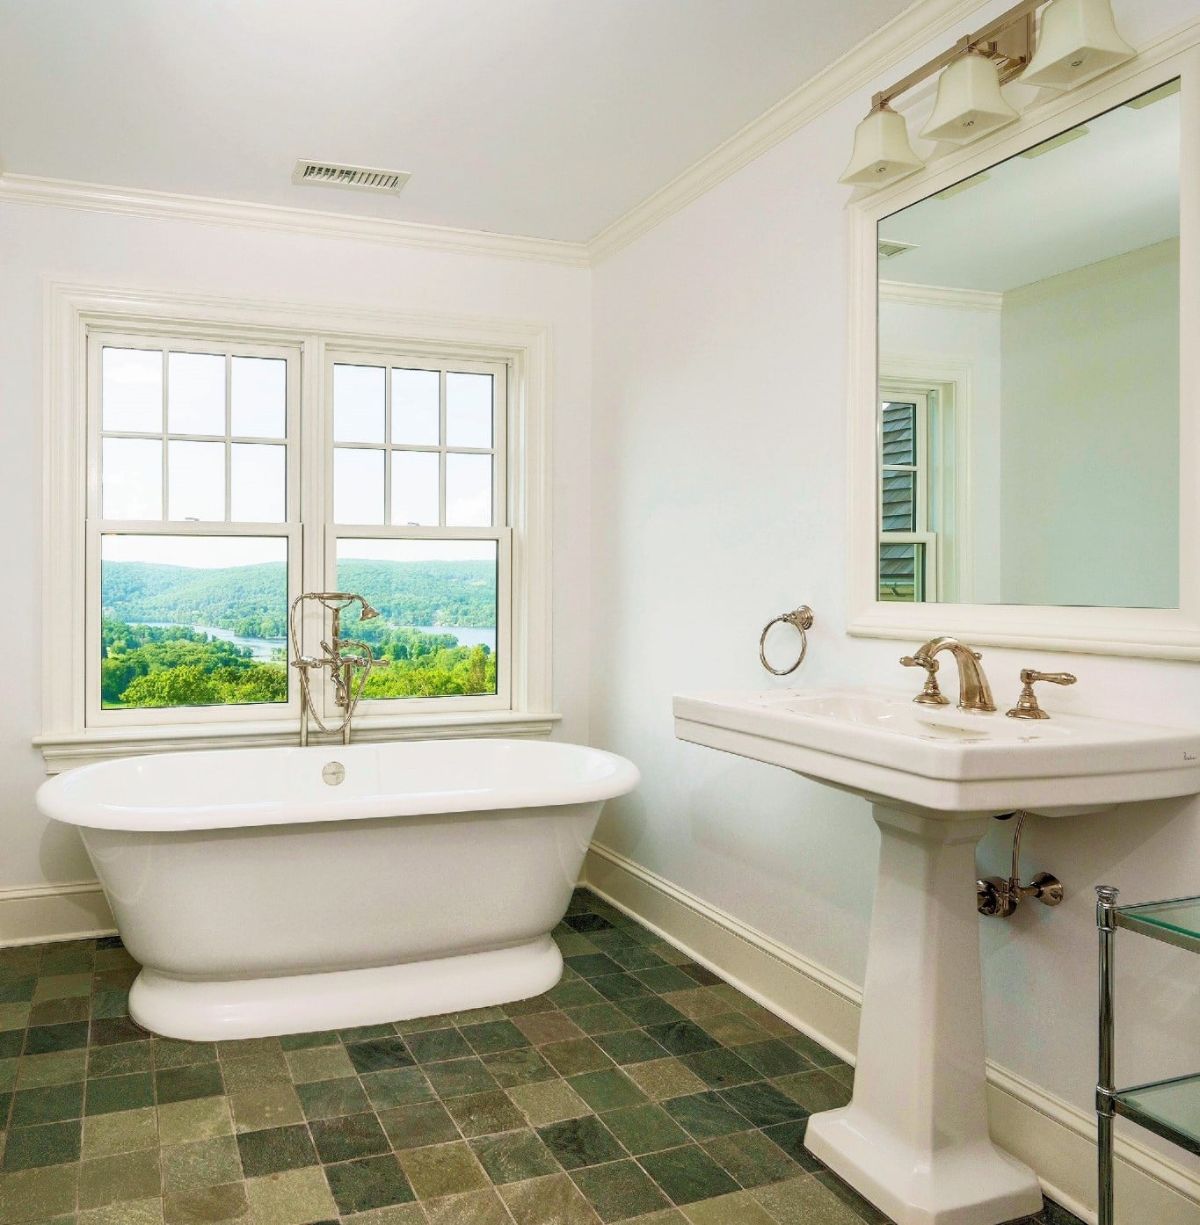 浴室设有一个独立的浴缸，镀金的固定装置给人一种豪华的感觉。